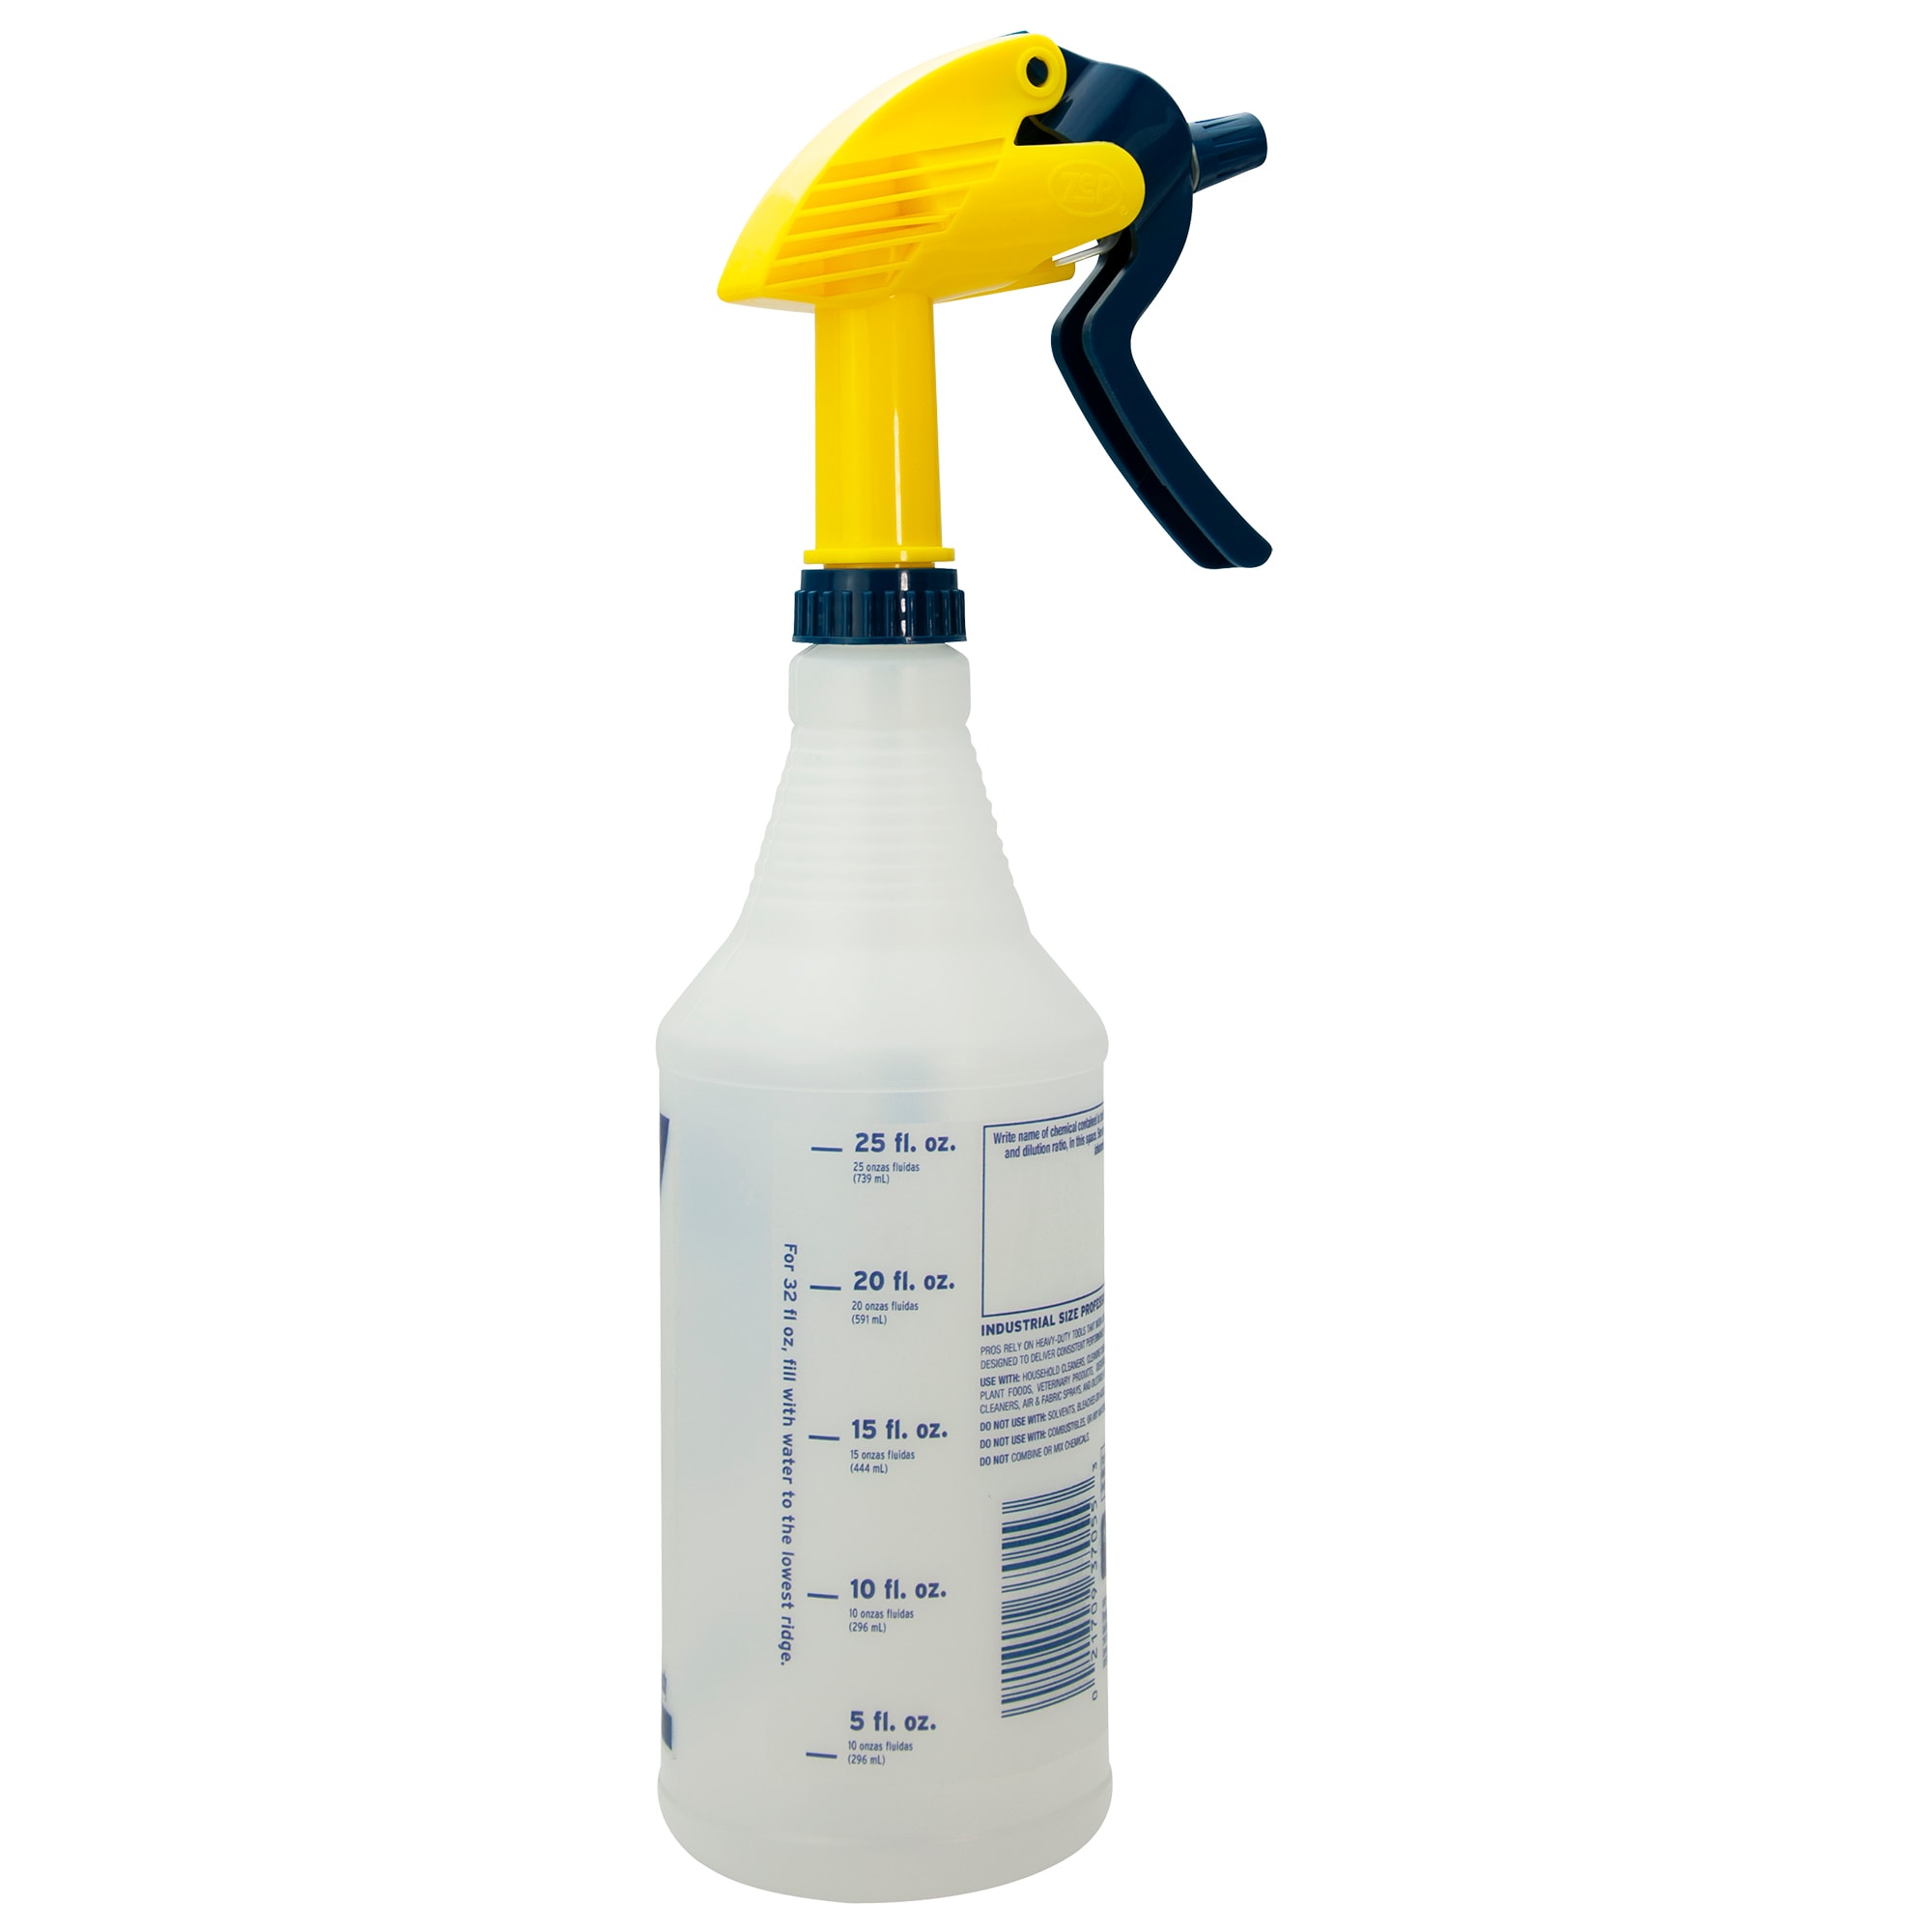 Zep 32 oz. Plastic Bleach Resistant Sprayer 2.0 Whole Bottle